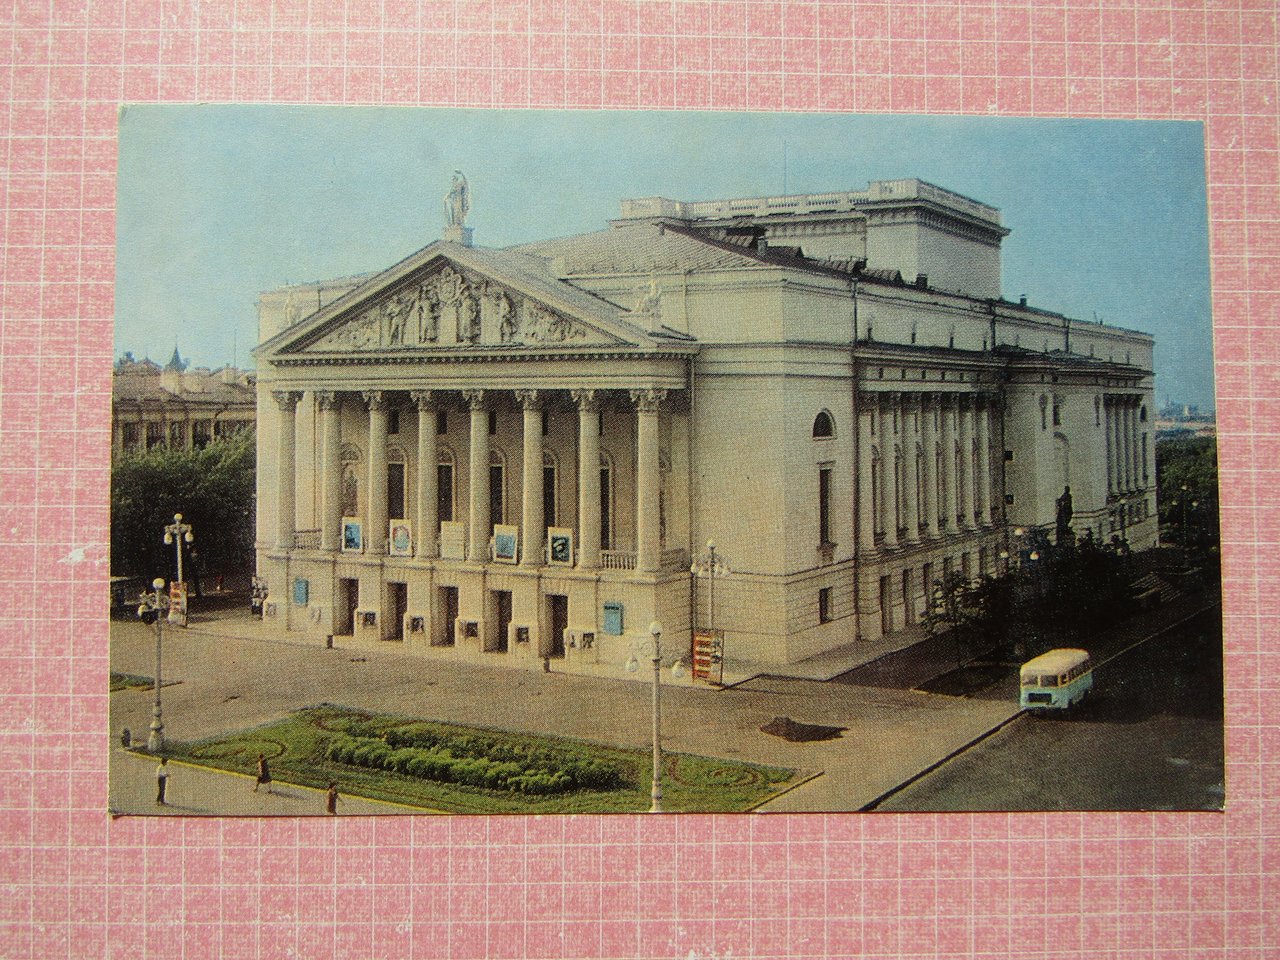 Казань. Театр оперы и балета